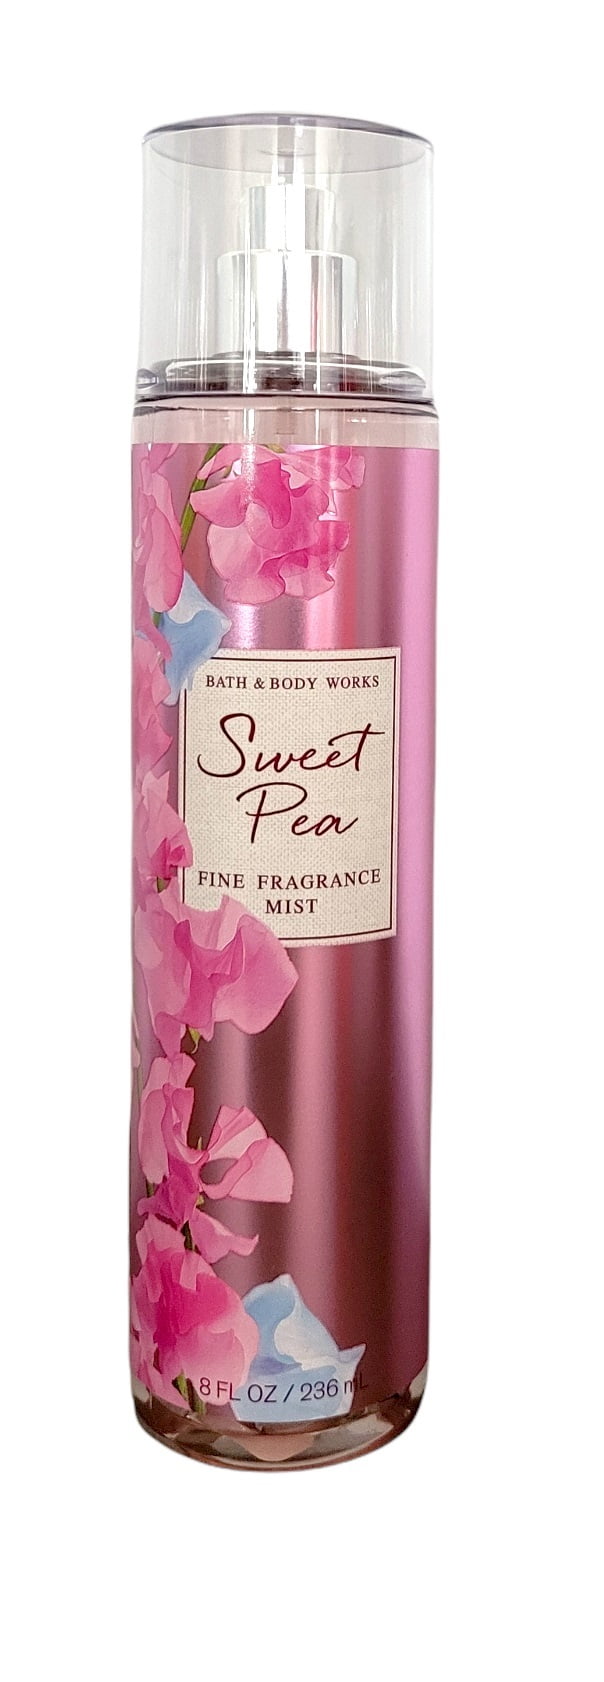 Bath & Body Works Sweet Pea Fine Fragrance Body Mist Spray 8 oz 